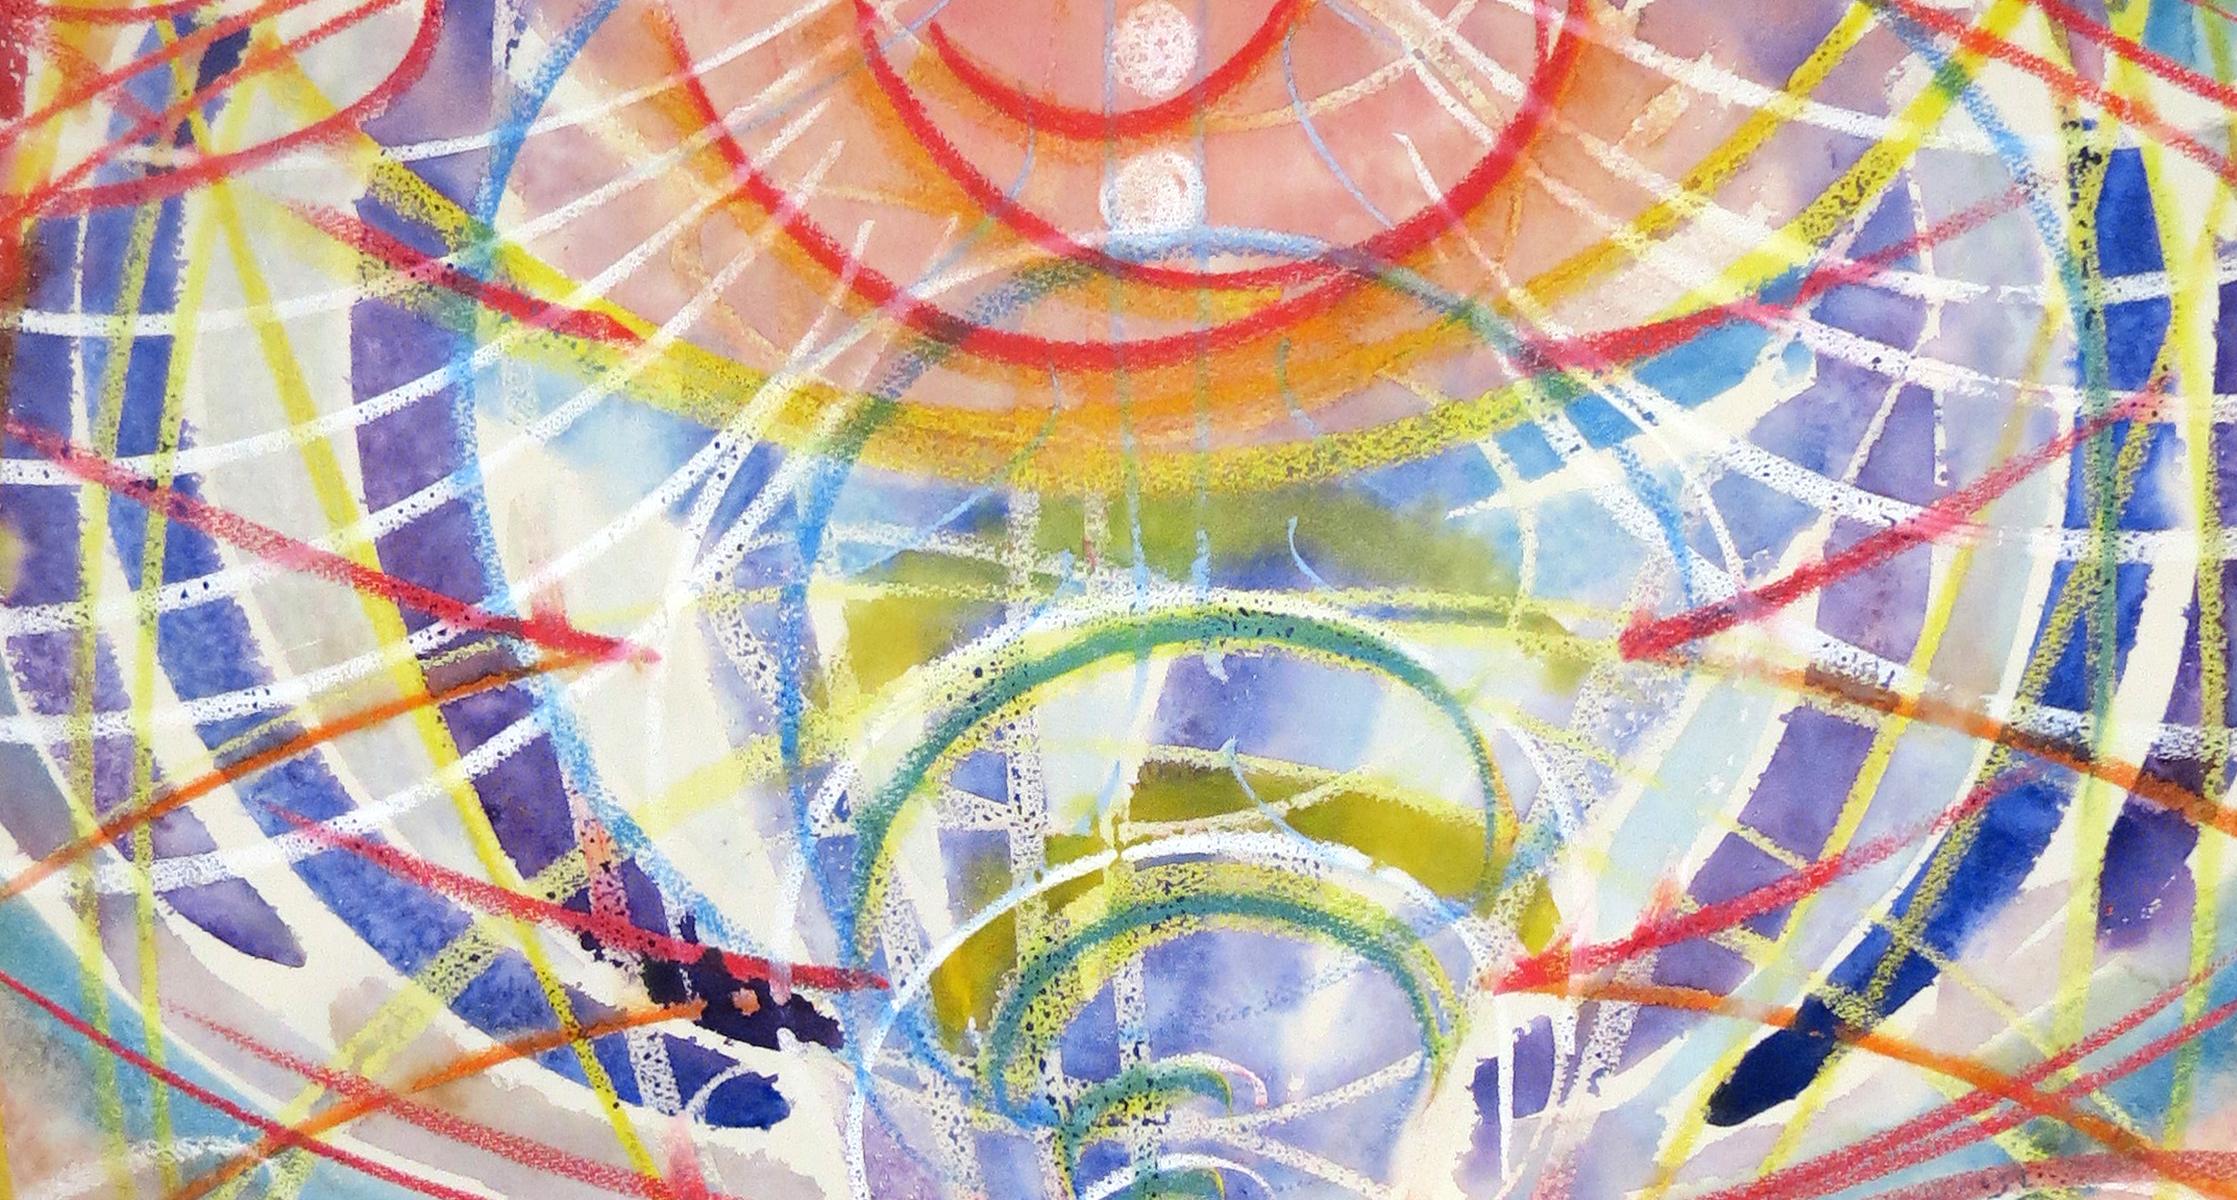  Delight - mythische, spirituelle, abstrakte Muster, farbenfrohe Aquarellbilder (Abstrakt), Art, von Janet Morgan